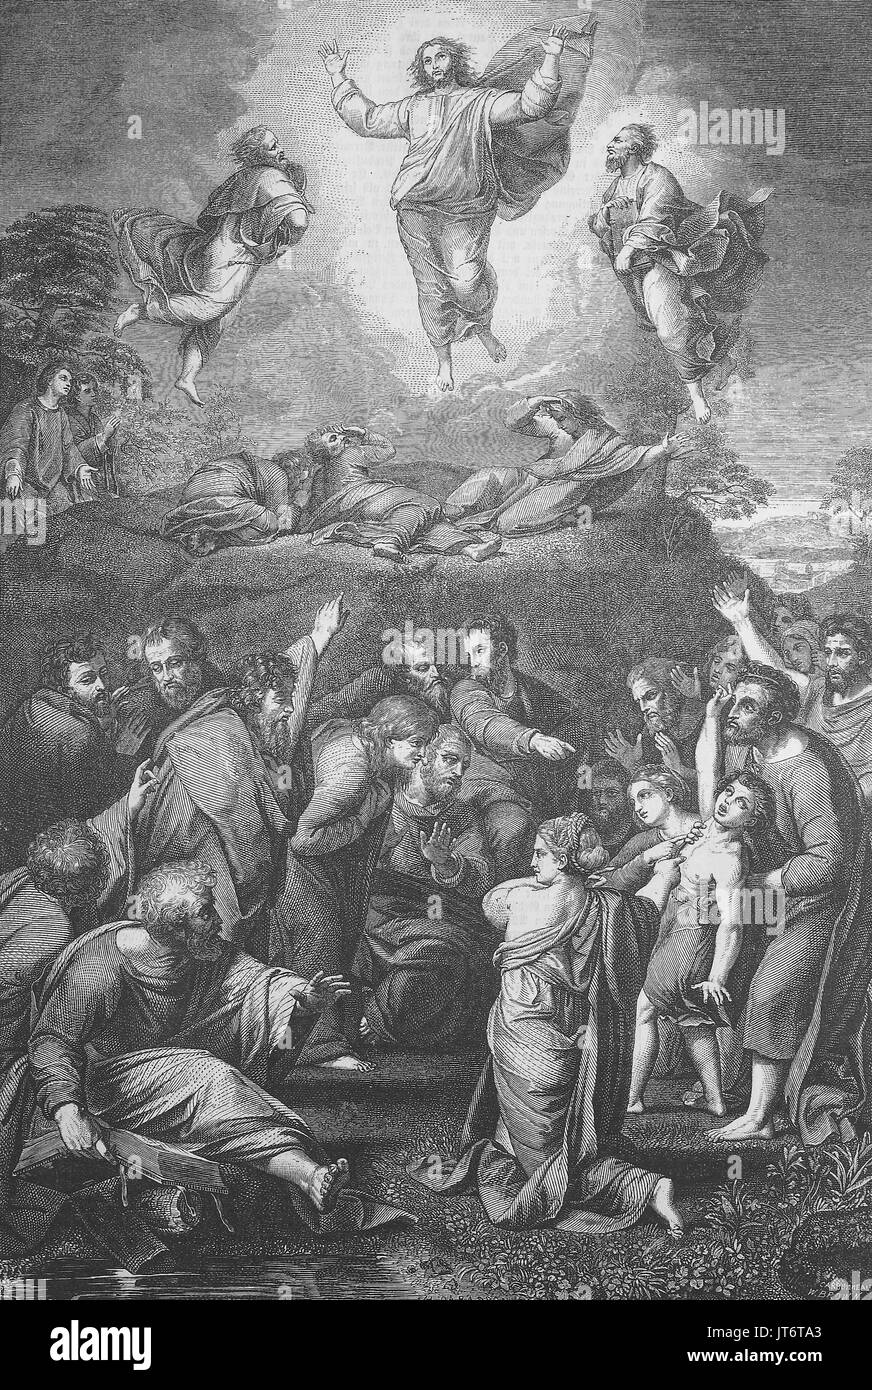 La transfiguration de Jésus est un événement rapporté dans le Nouveau Testament lorsque Jésus est transfiguré et devient dans la gloire rayonnante sur une montagne, , Amélioration numérique reproduction d'une image publié entre 1880 - 1885 Banque D'Images